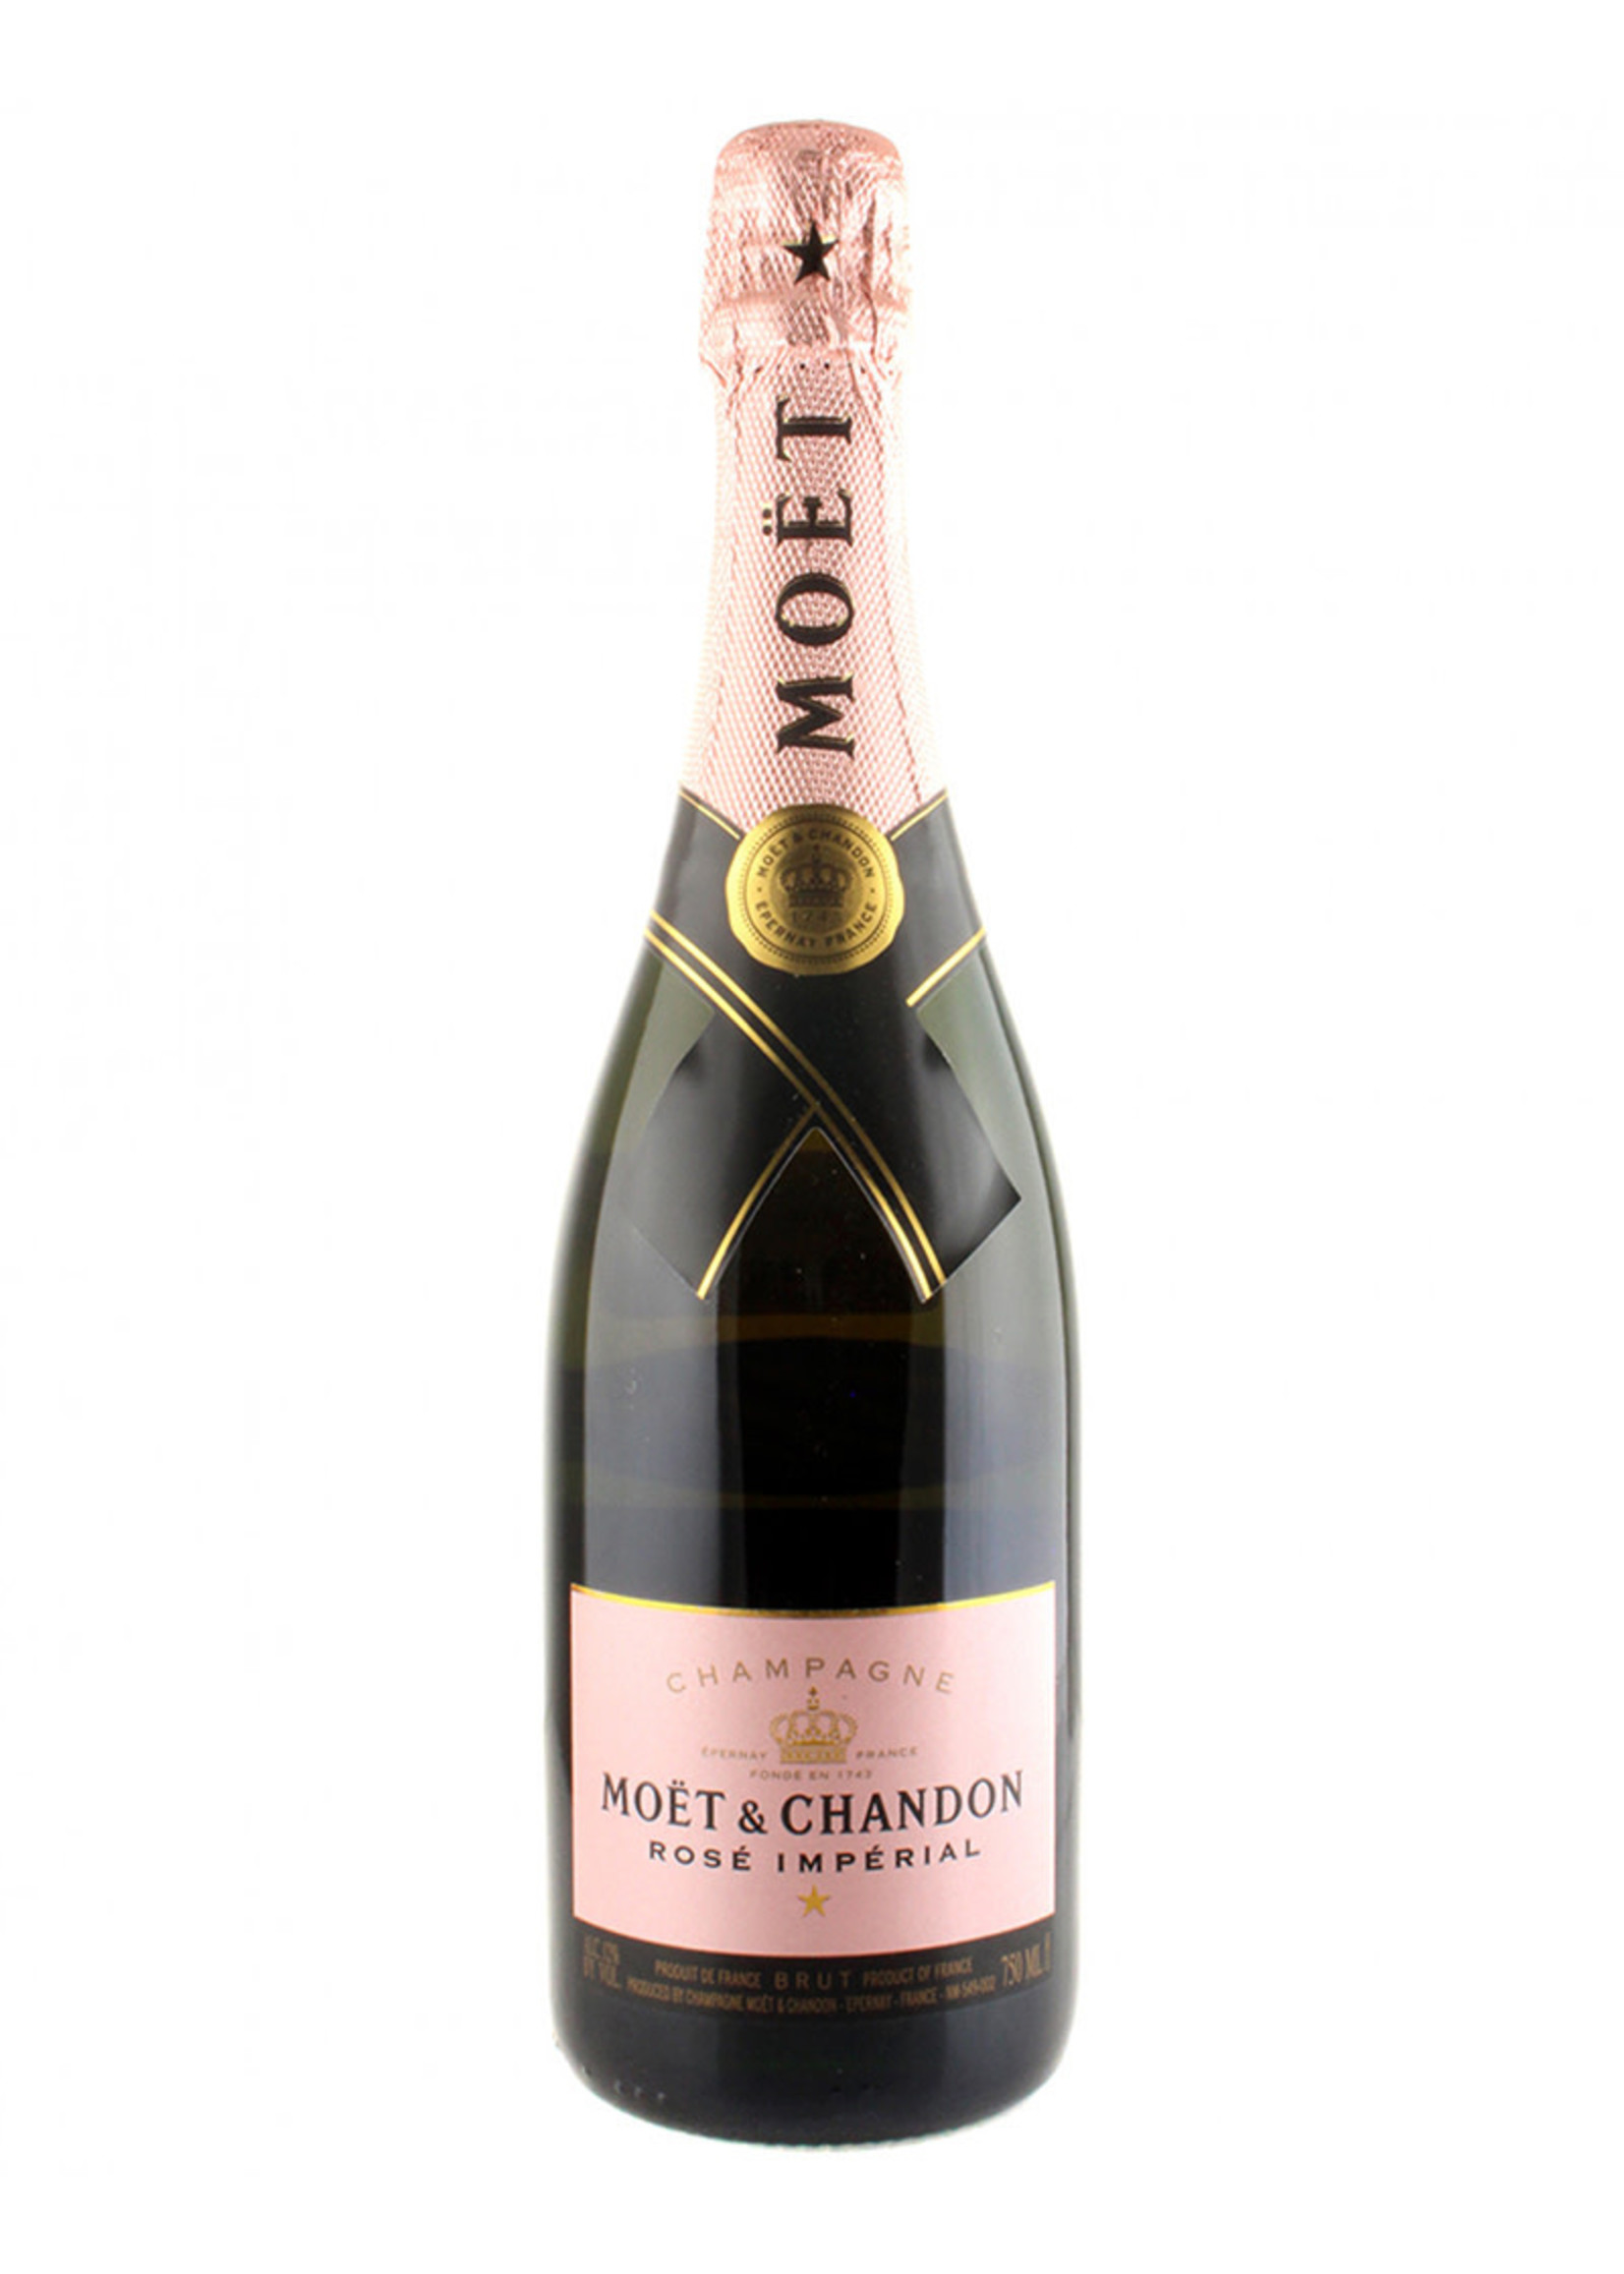 Moët & Chandon NV Imperial Rosé Champagne, France